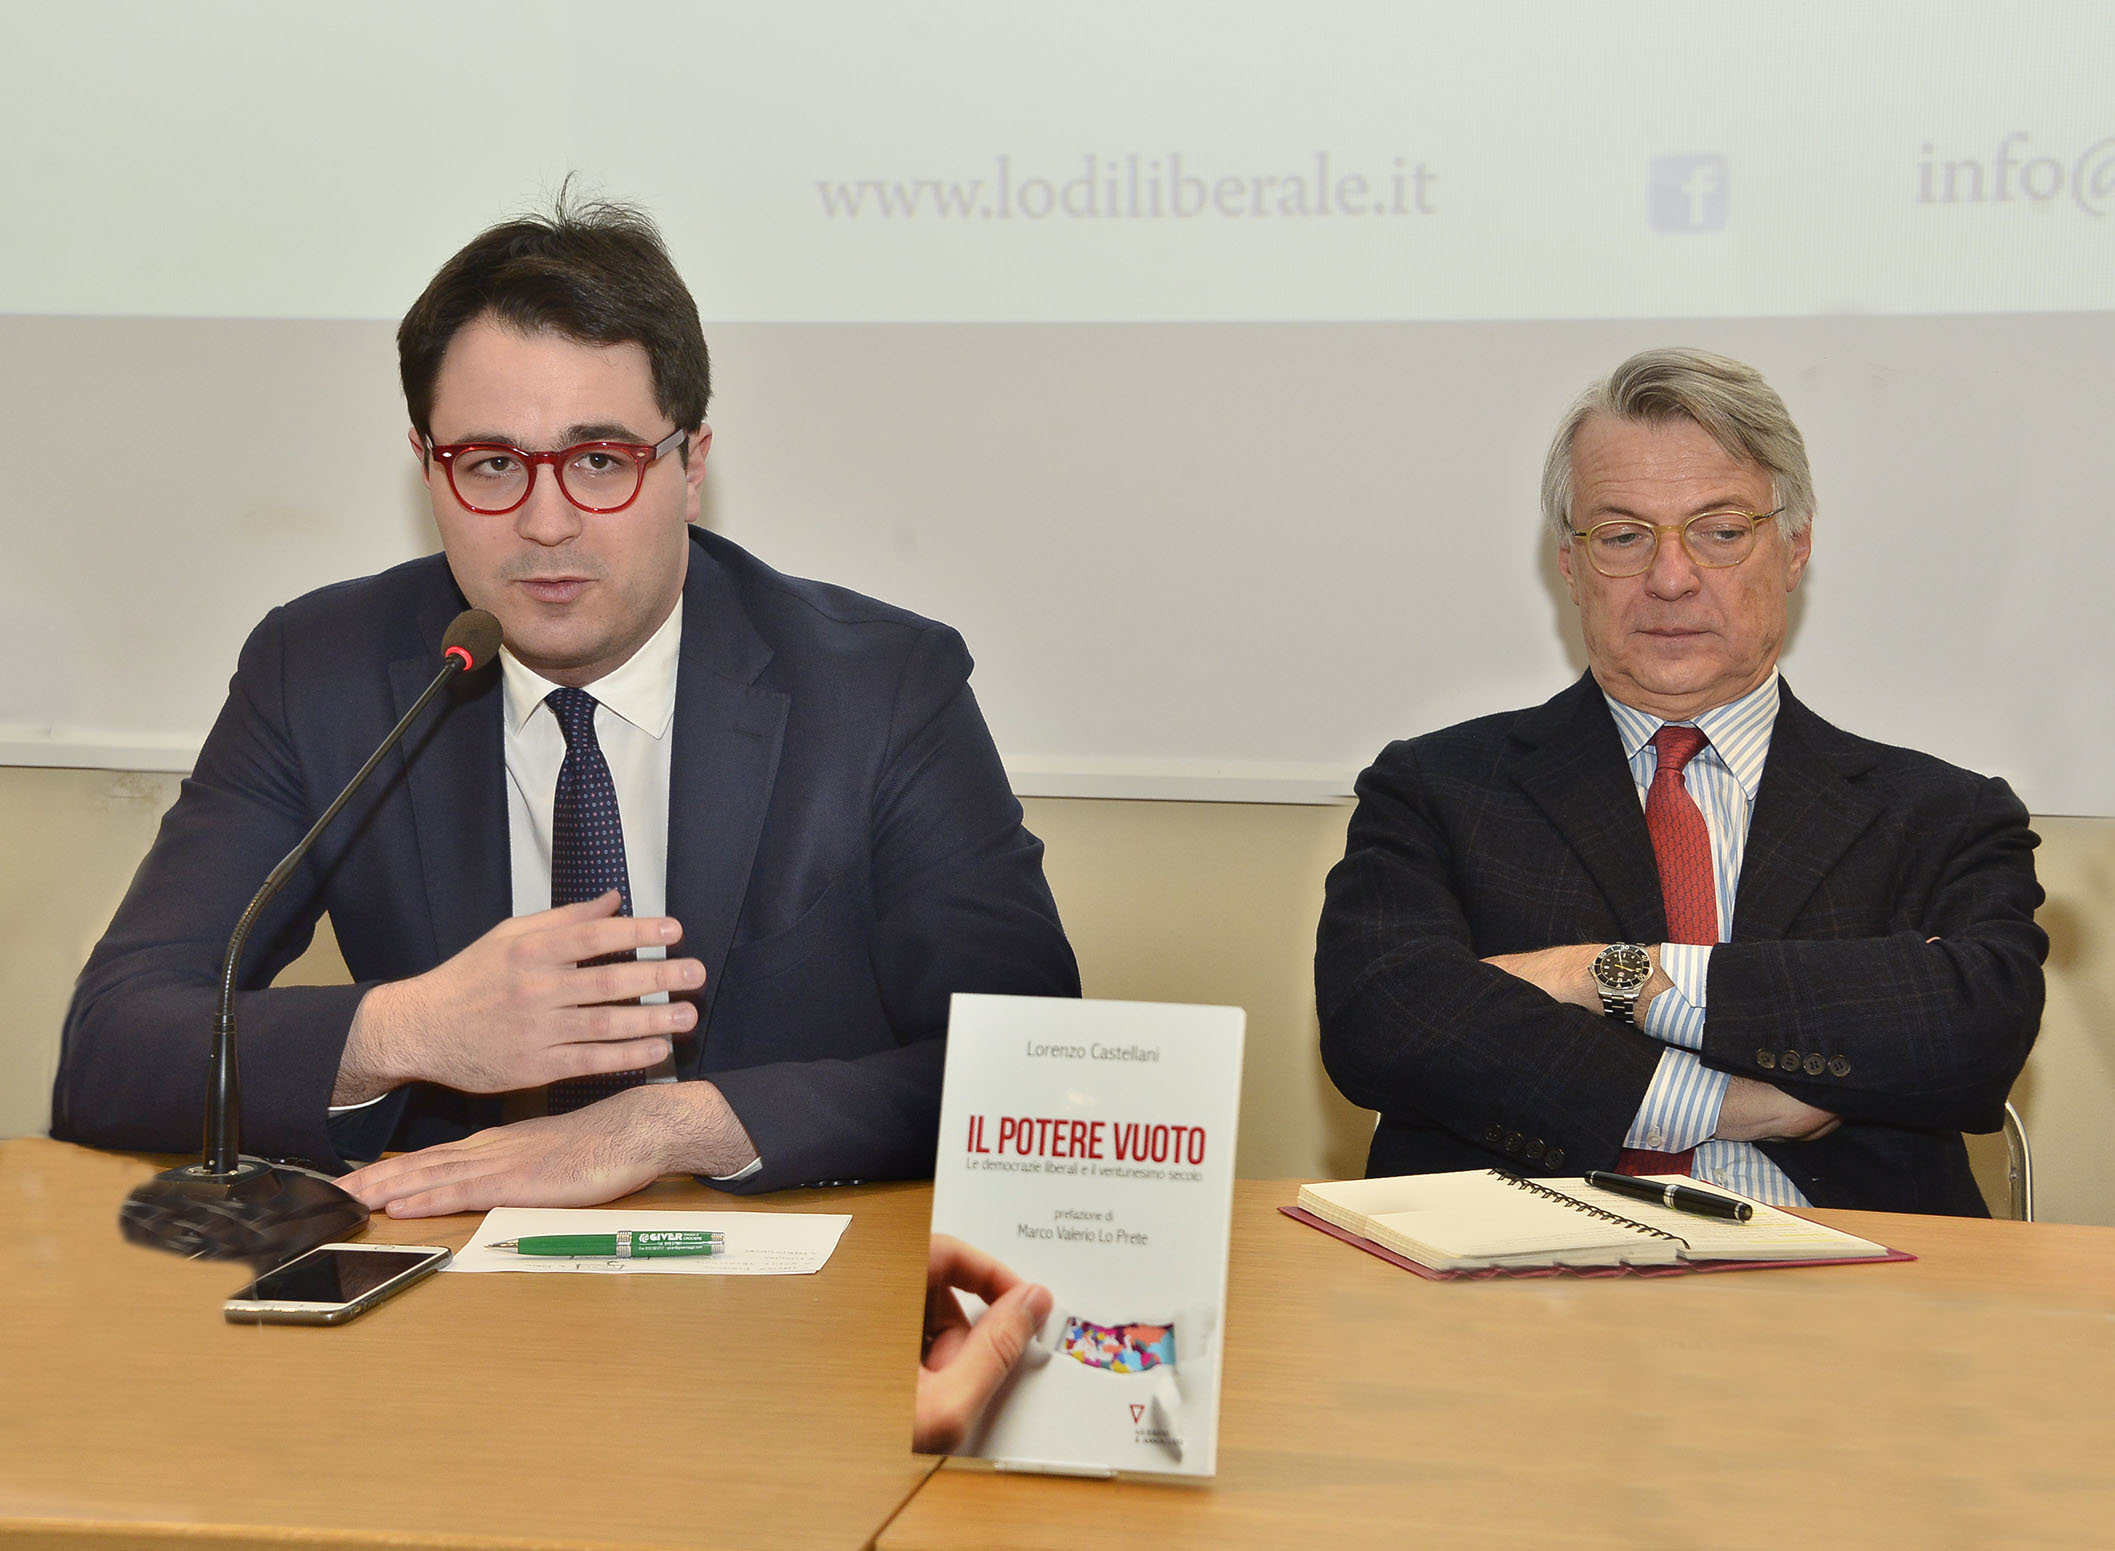 Associazione Lodi Liberale - Presentazione del libro "Il potere vuoto" Lorenzo Castellani, Ferruccio de Bortoli Maggi Montini